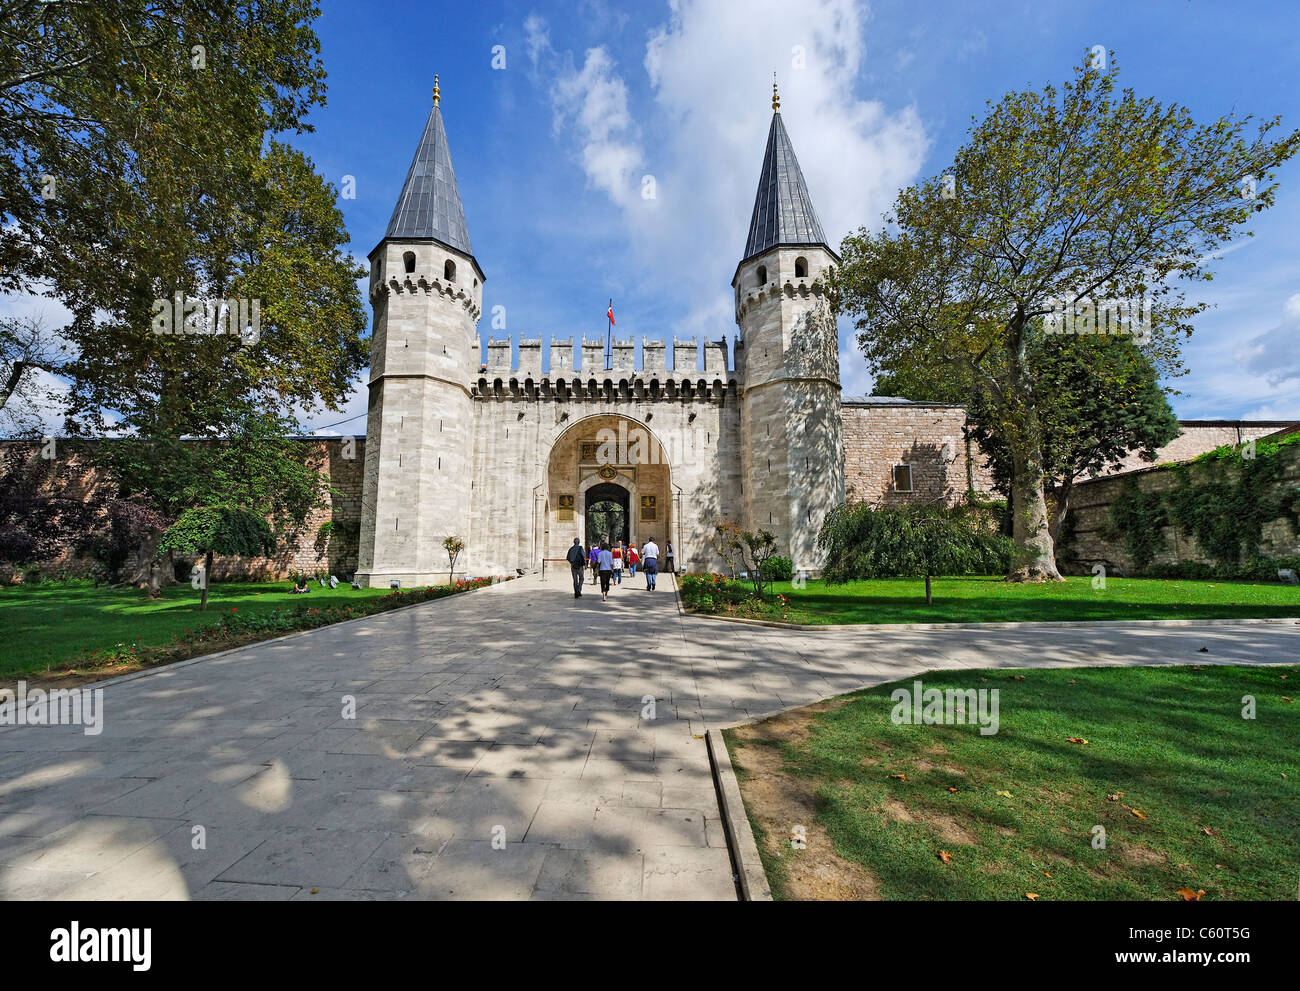 La gate di Salutations: ingresso principale al Palazzo Topkapi a Istanbul. Foto Stock